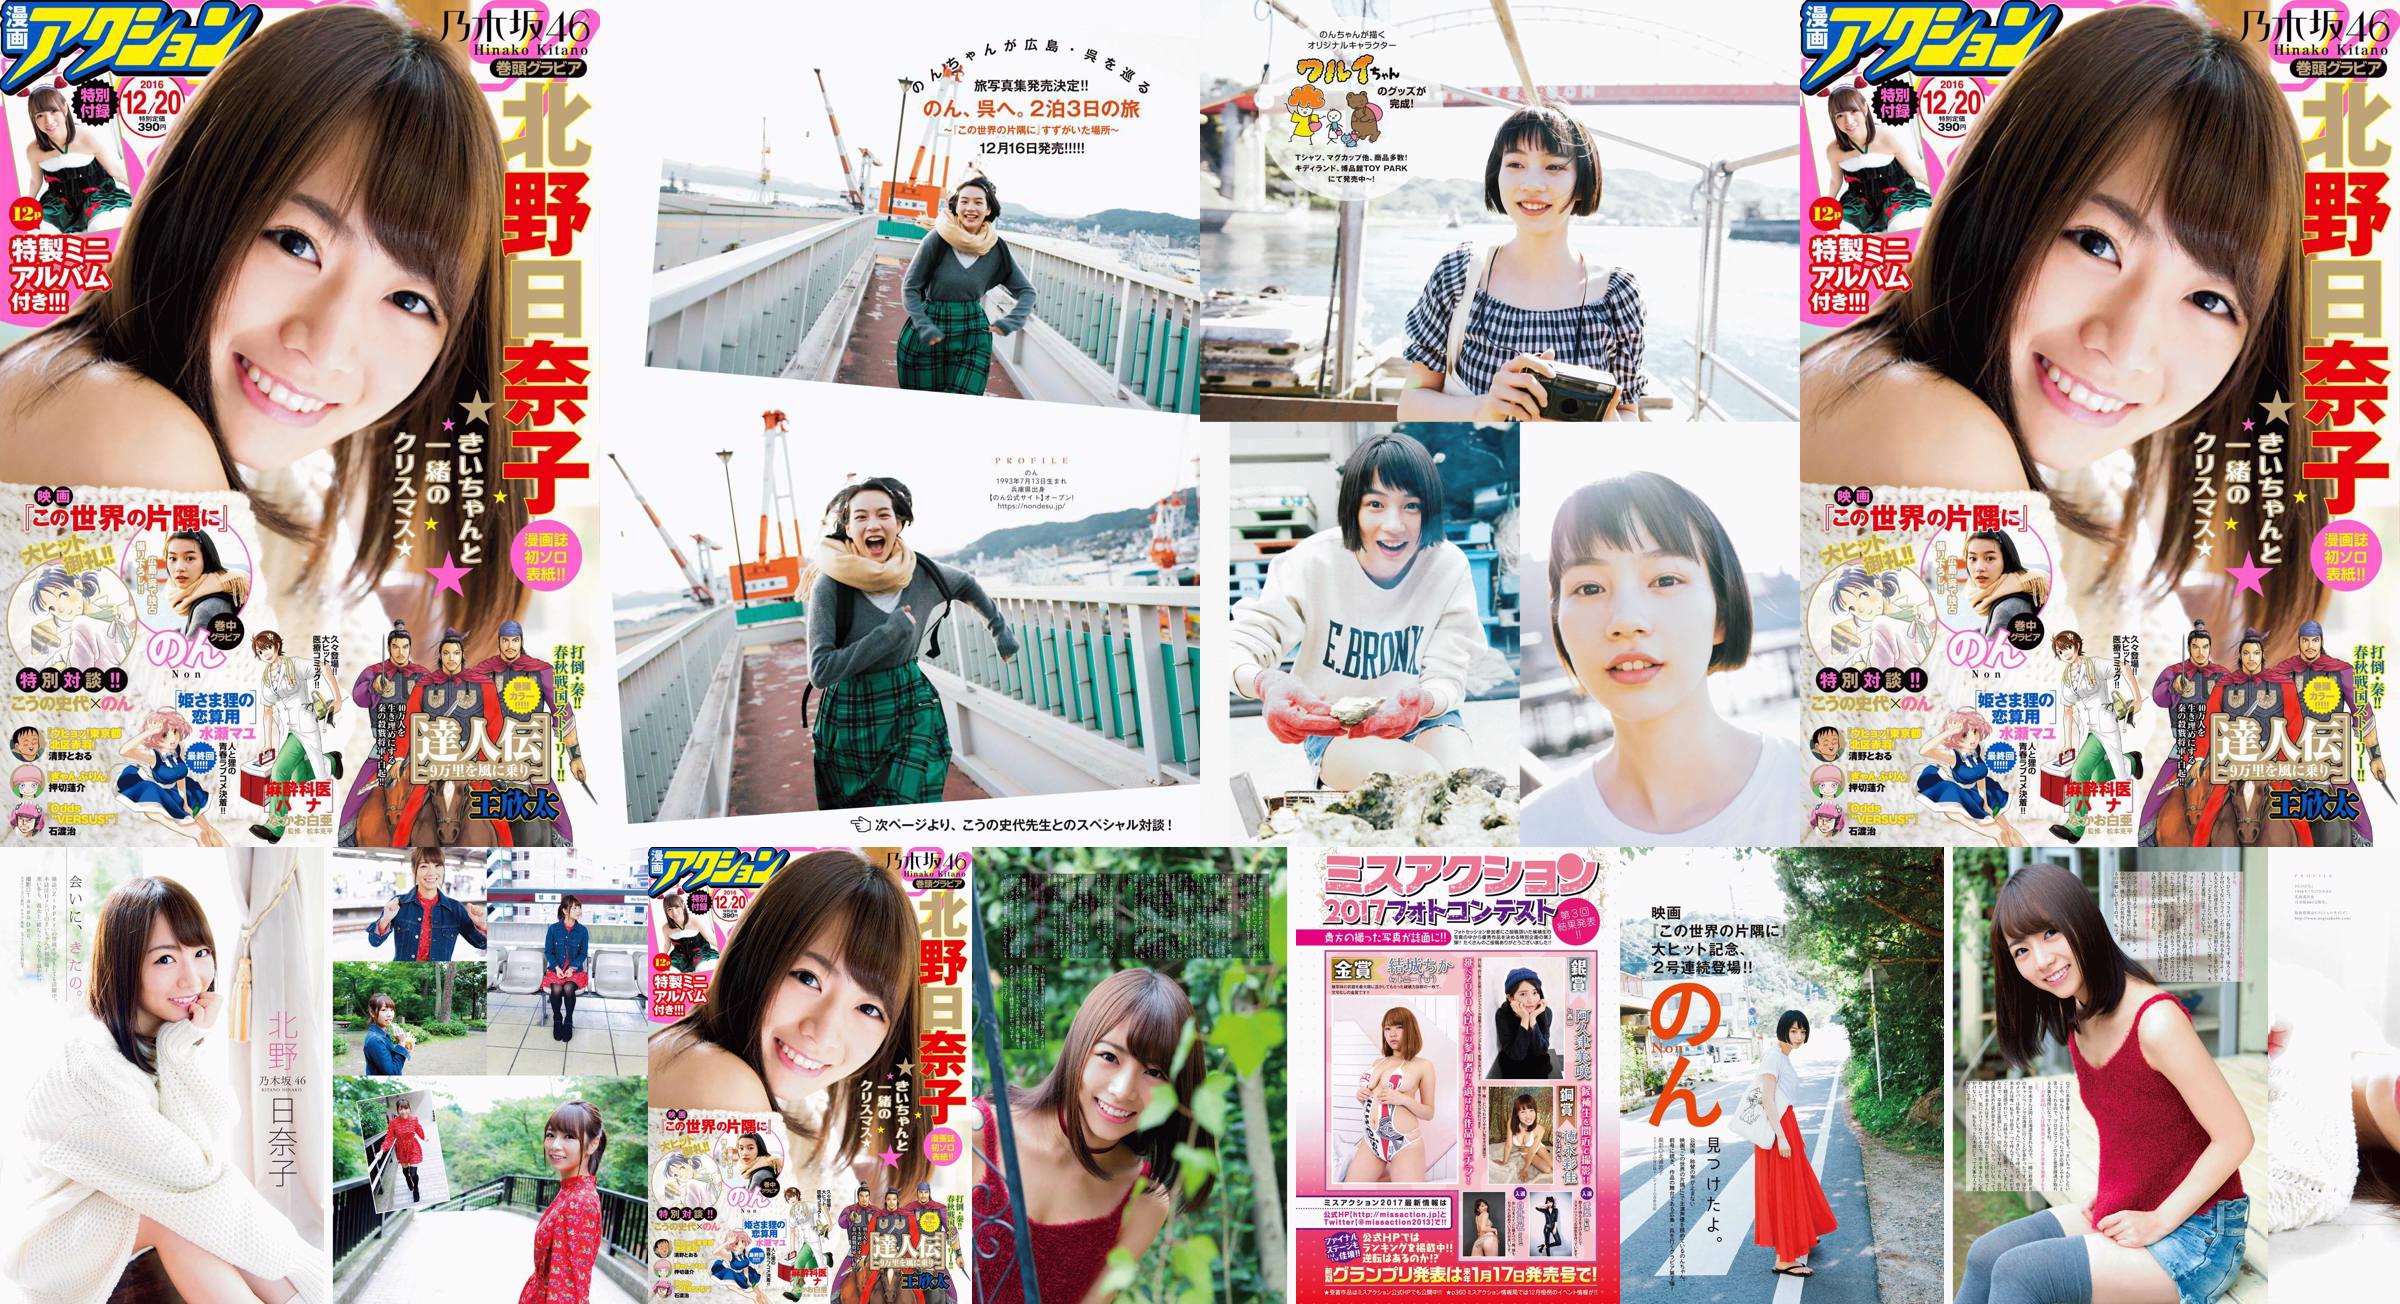 [Manga Action] Kitano Hinako のん 2016 No.24 Photo Magazine No.61e12d Page 2